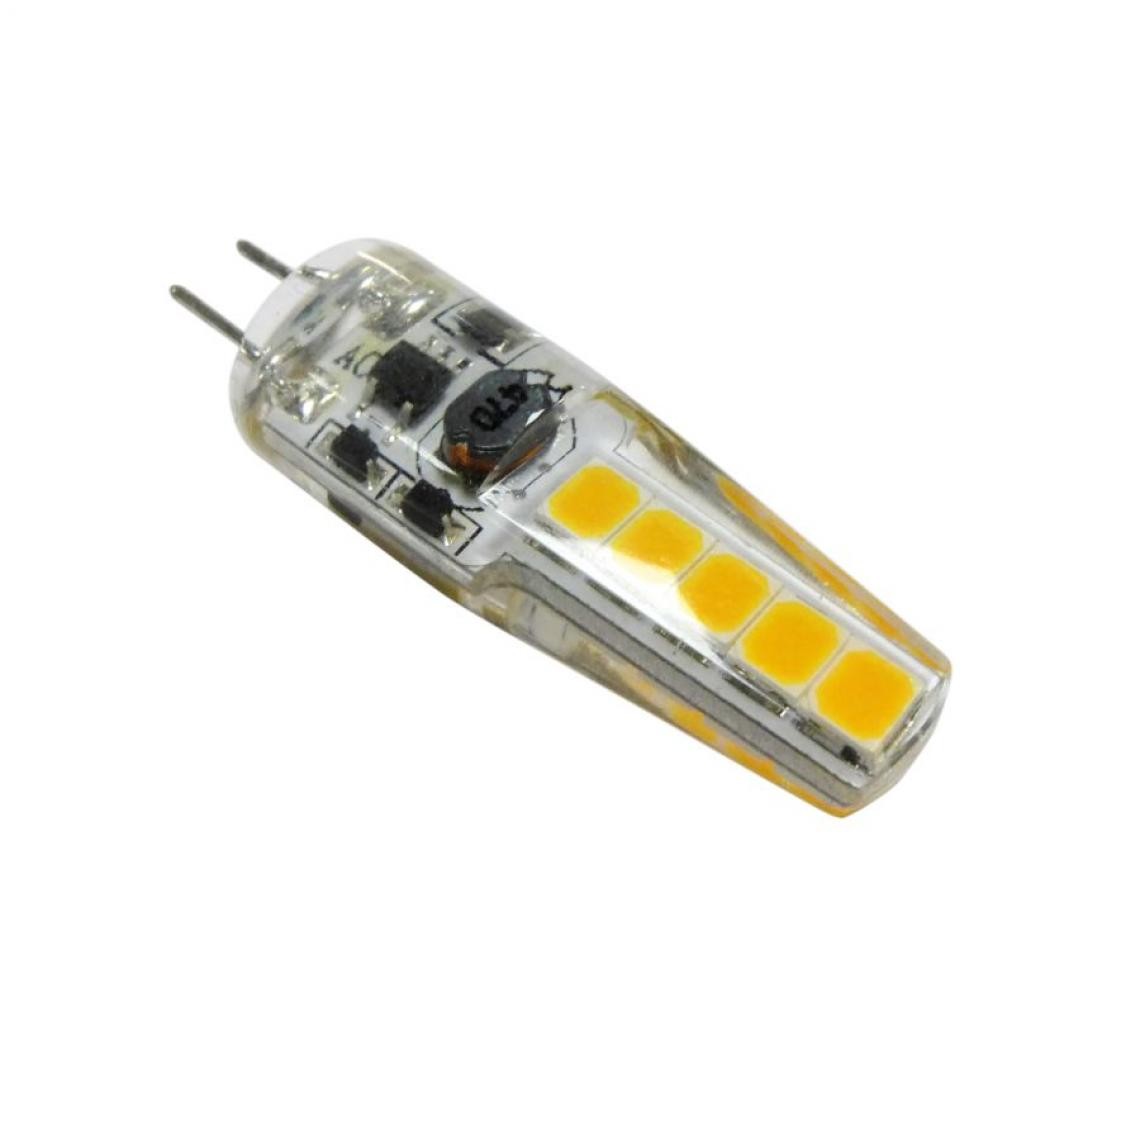 Aric - lampe à led - g4 - 1.8w - 3000k - 12 volts - aric 2877 - Ampoules LED